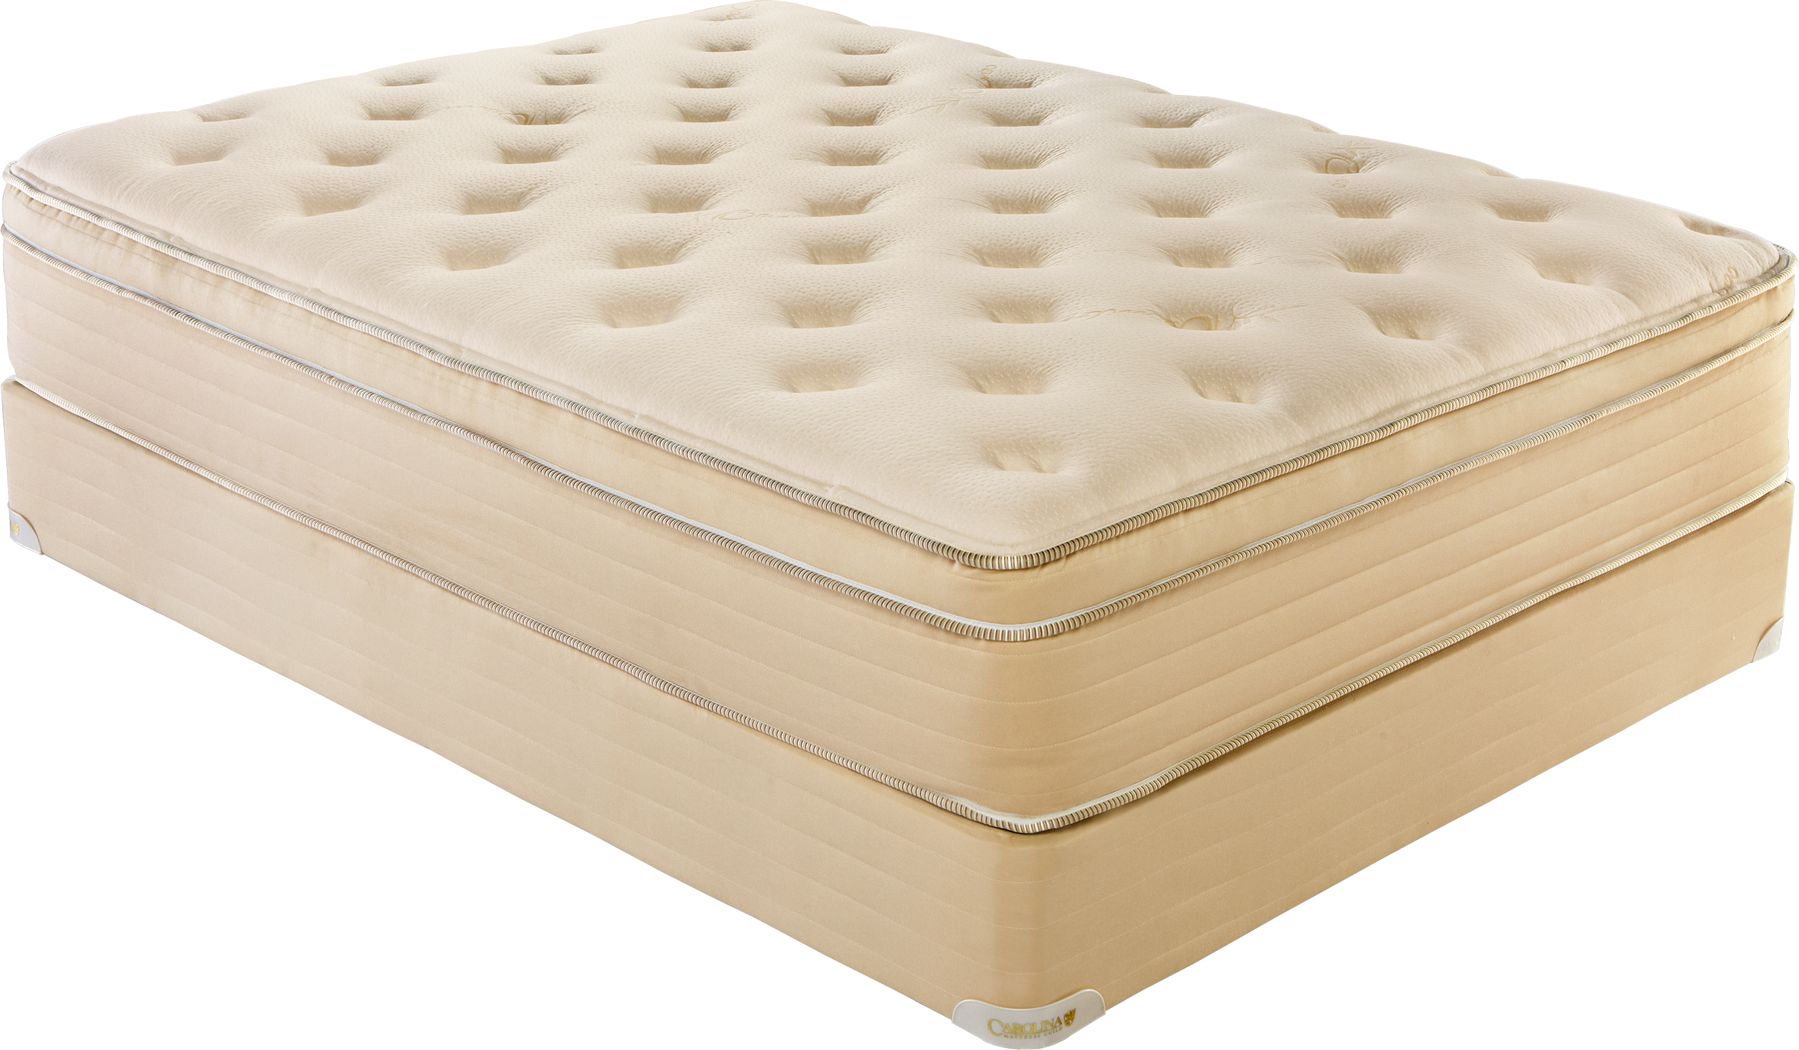 queen mattress set calgary